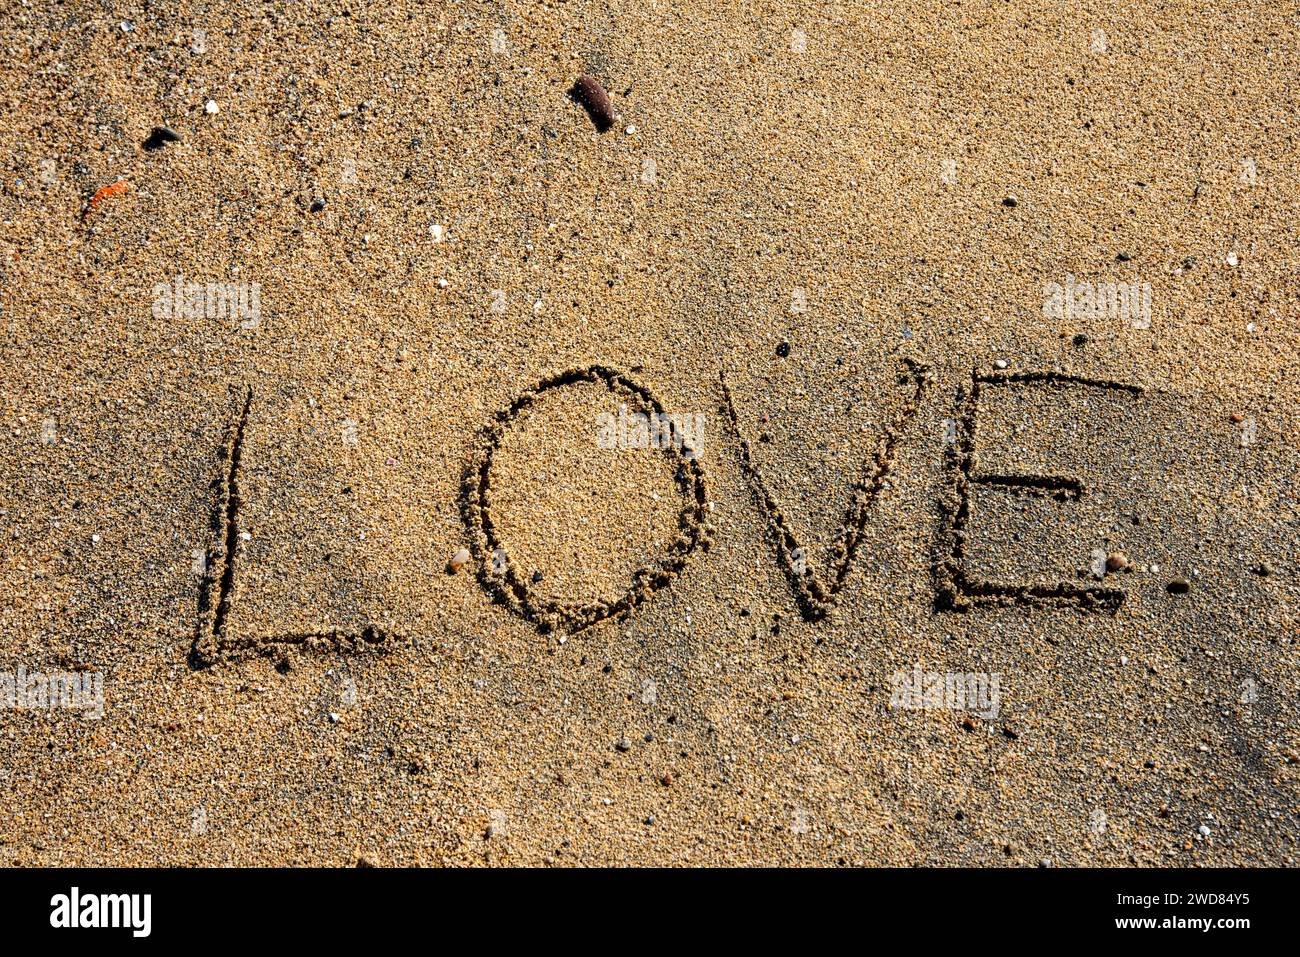 Amore impresso nelle sabbie della serenità, un momento tranquillo sulla spiaggia che cattura romantici sussurri sulla riva. Foto Stock